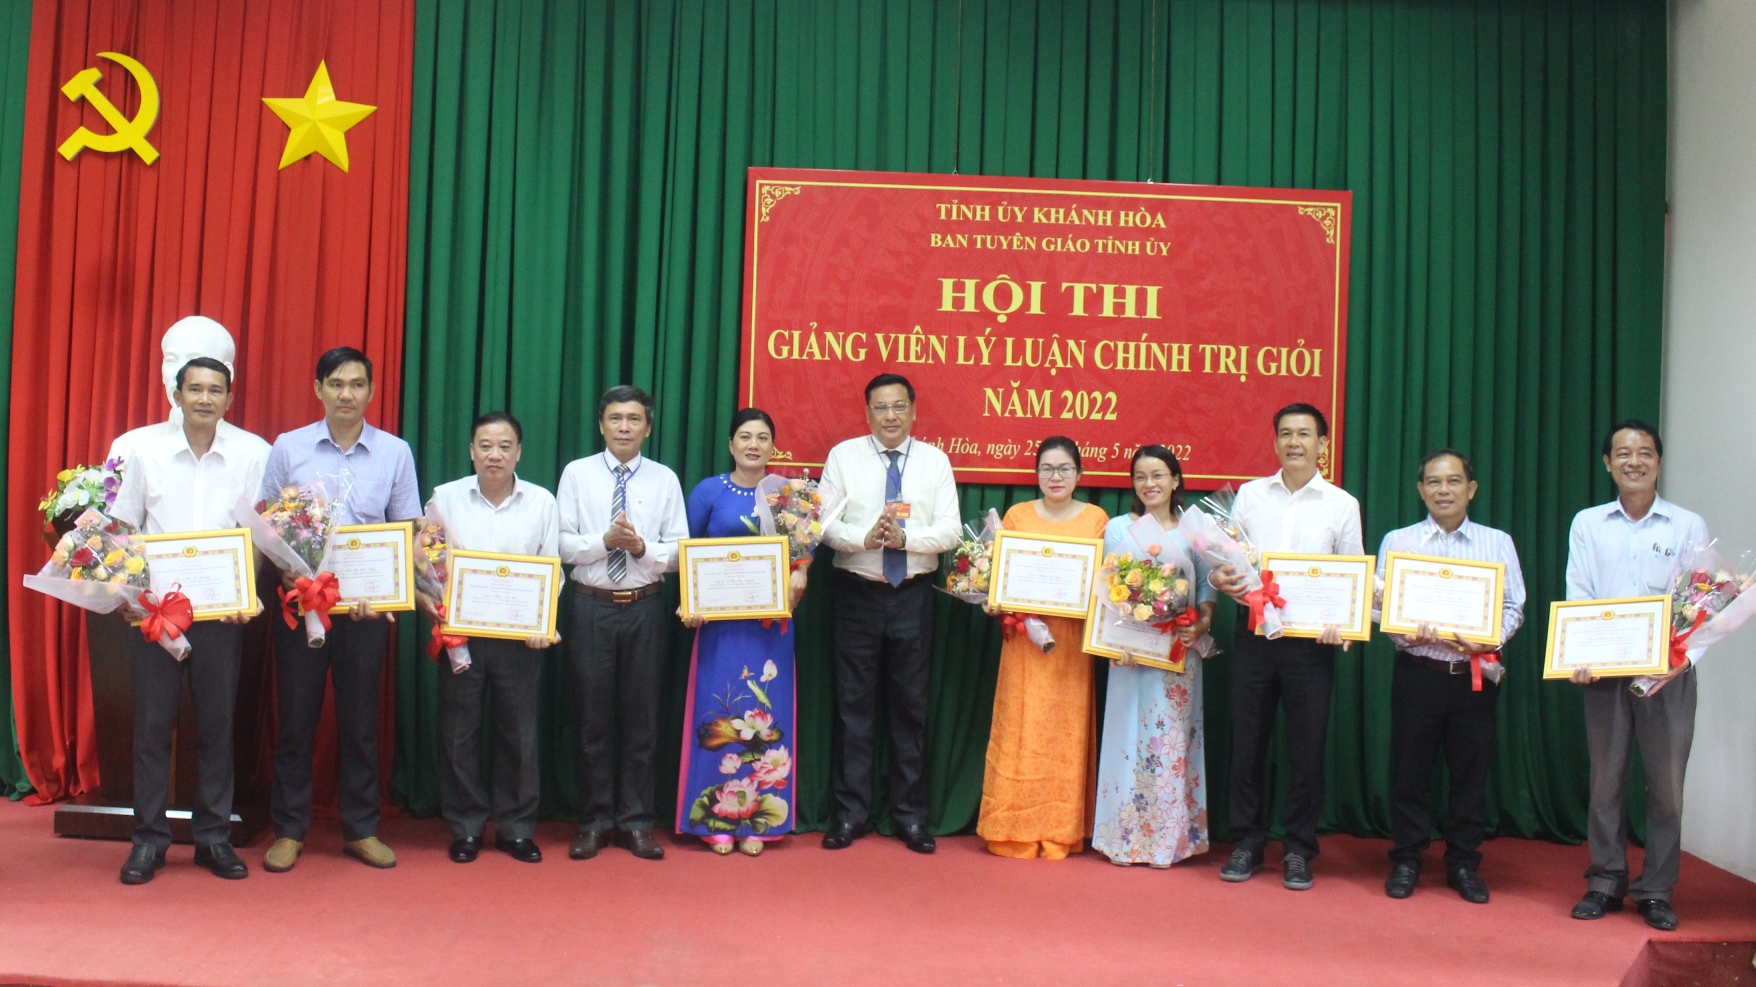 Ông Lê Hữu Thọ trao giấy chứng nhận giảng viên đạt loại giỏi hội thi cho các giảng viên.